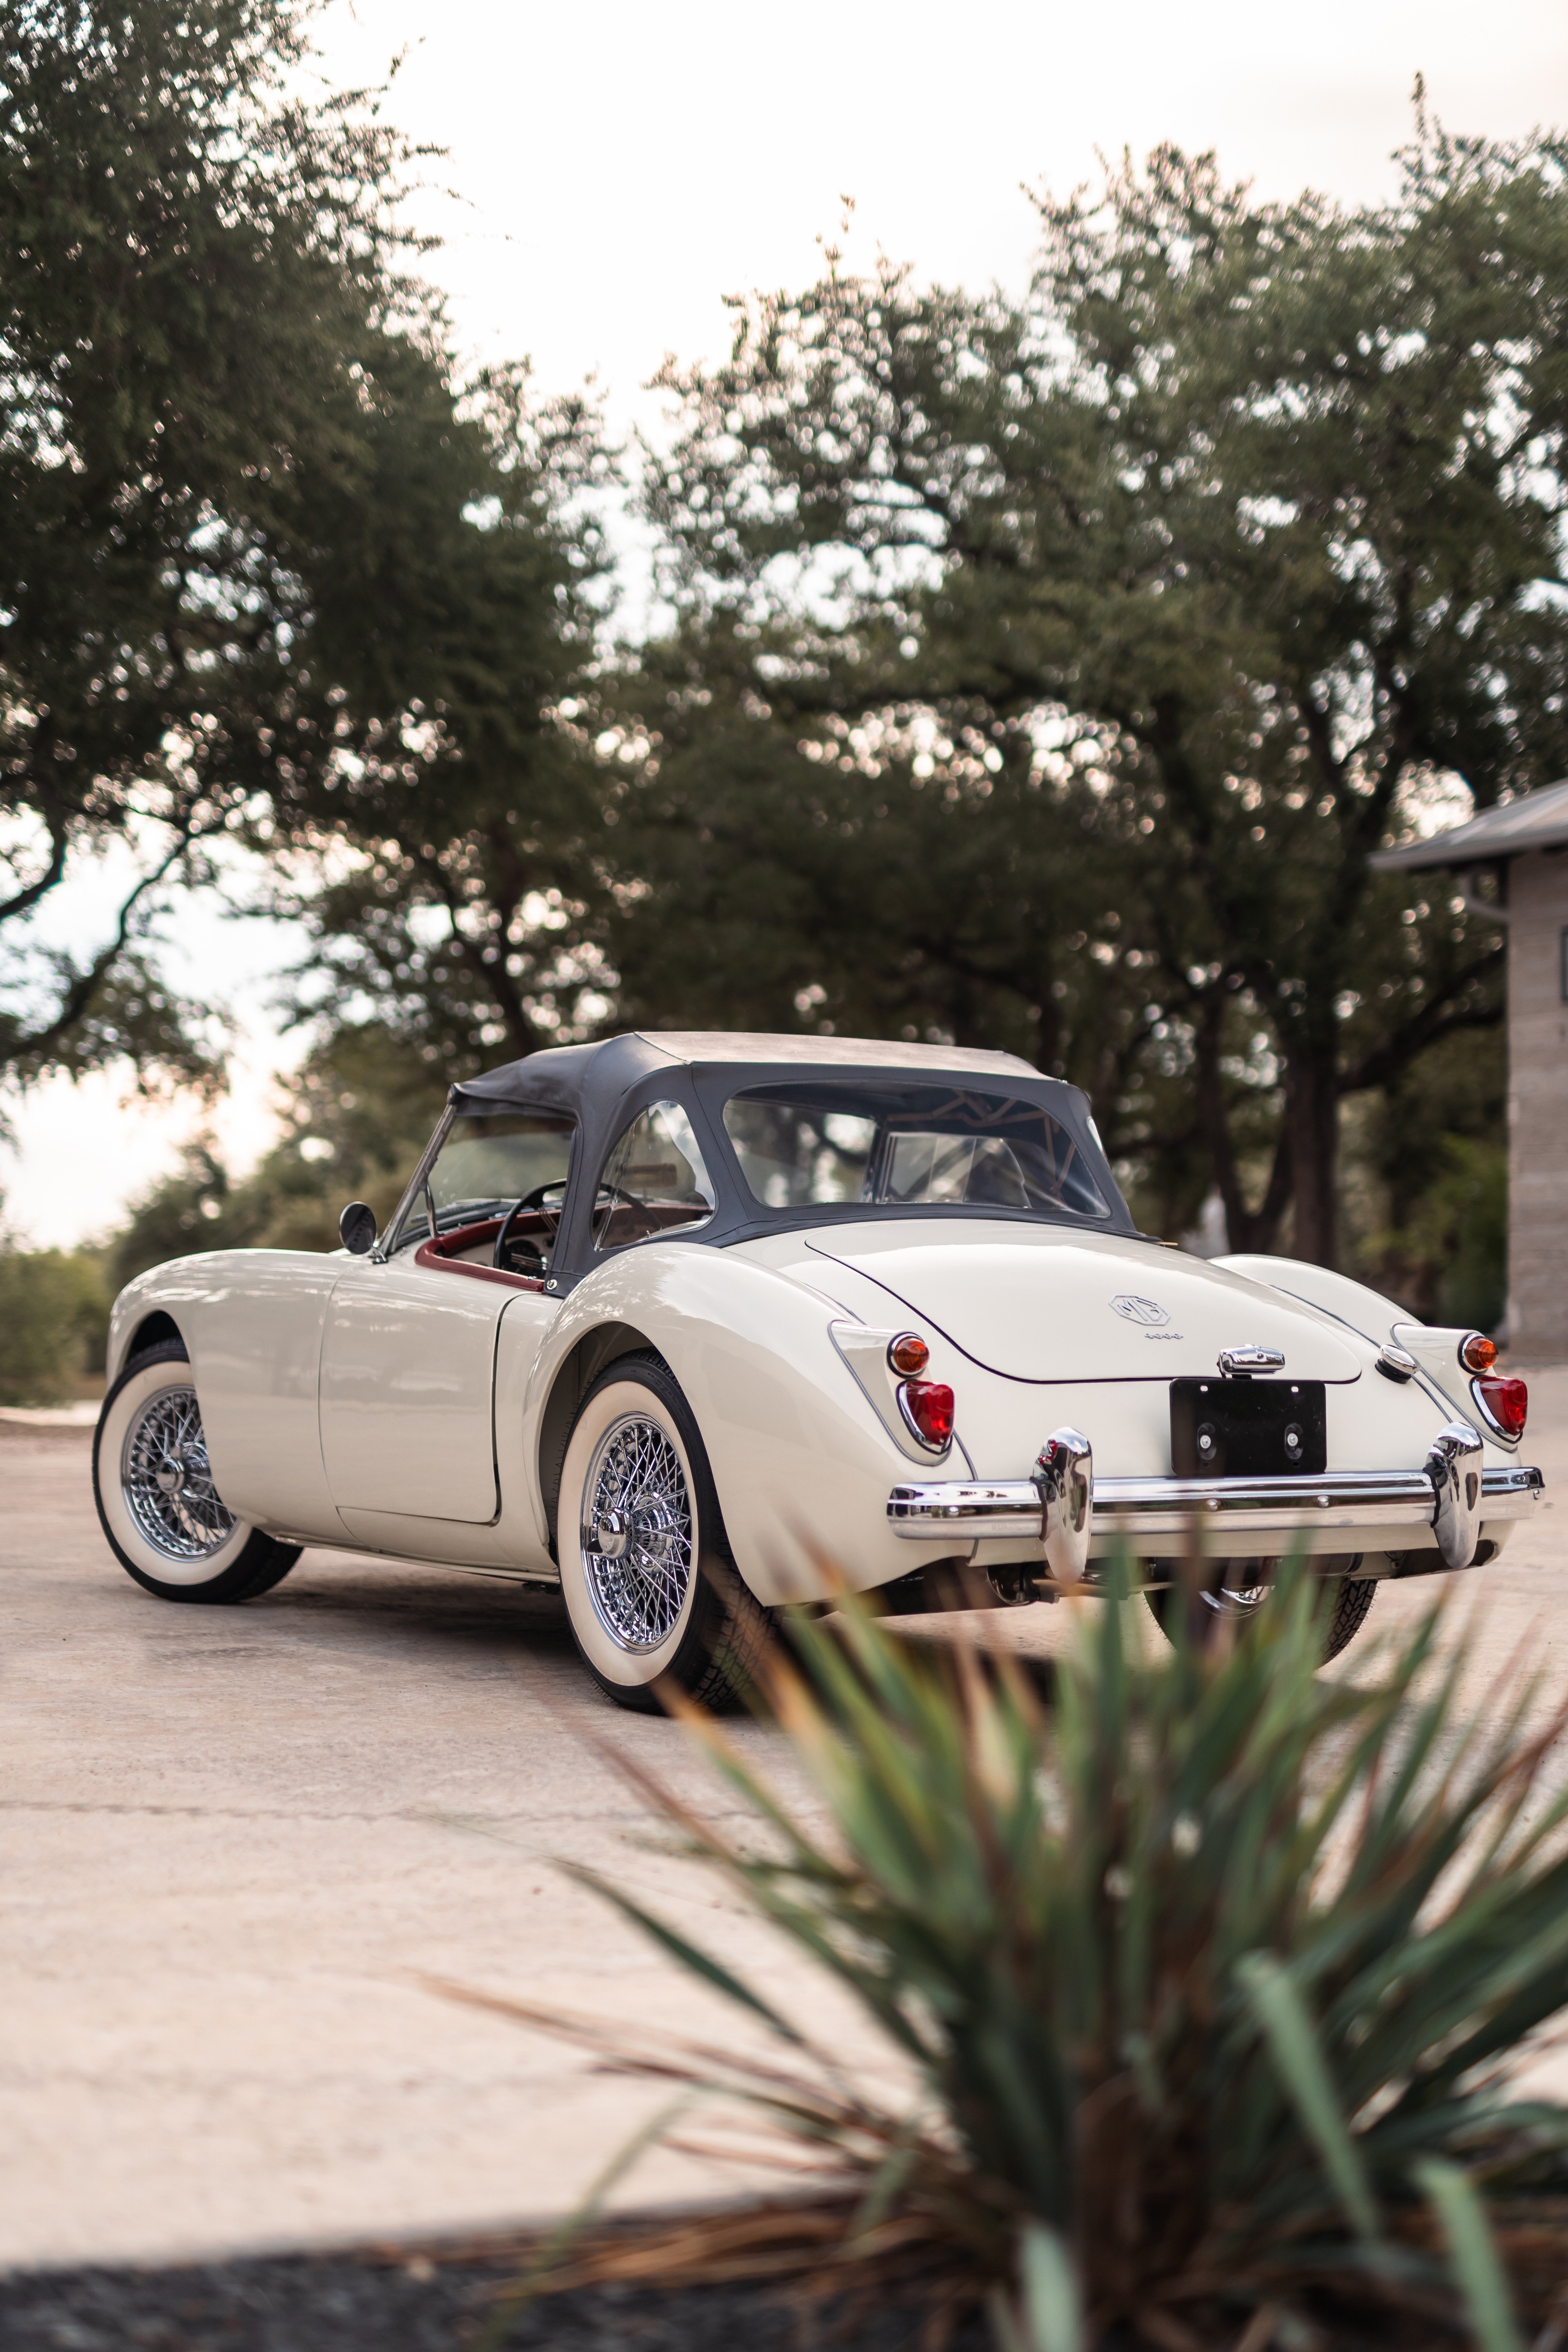 1957 MG MGA in White shot in Austin, TX.